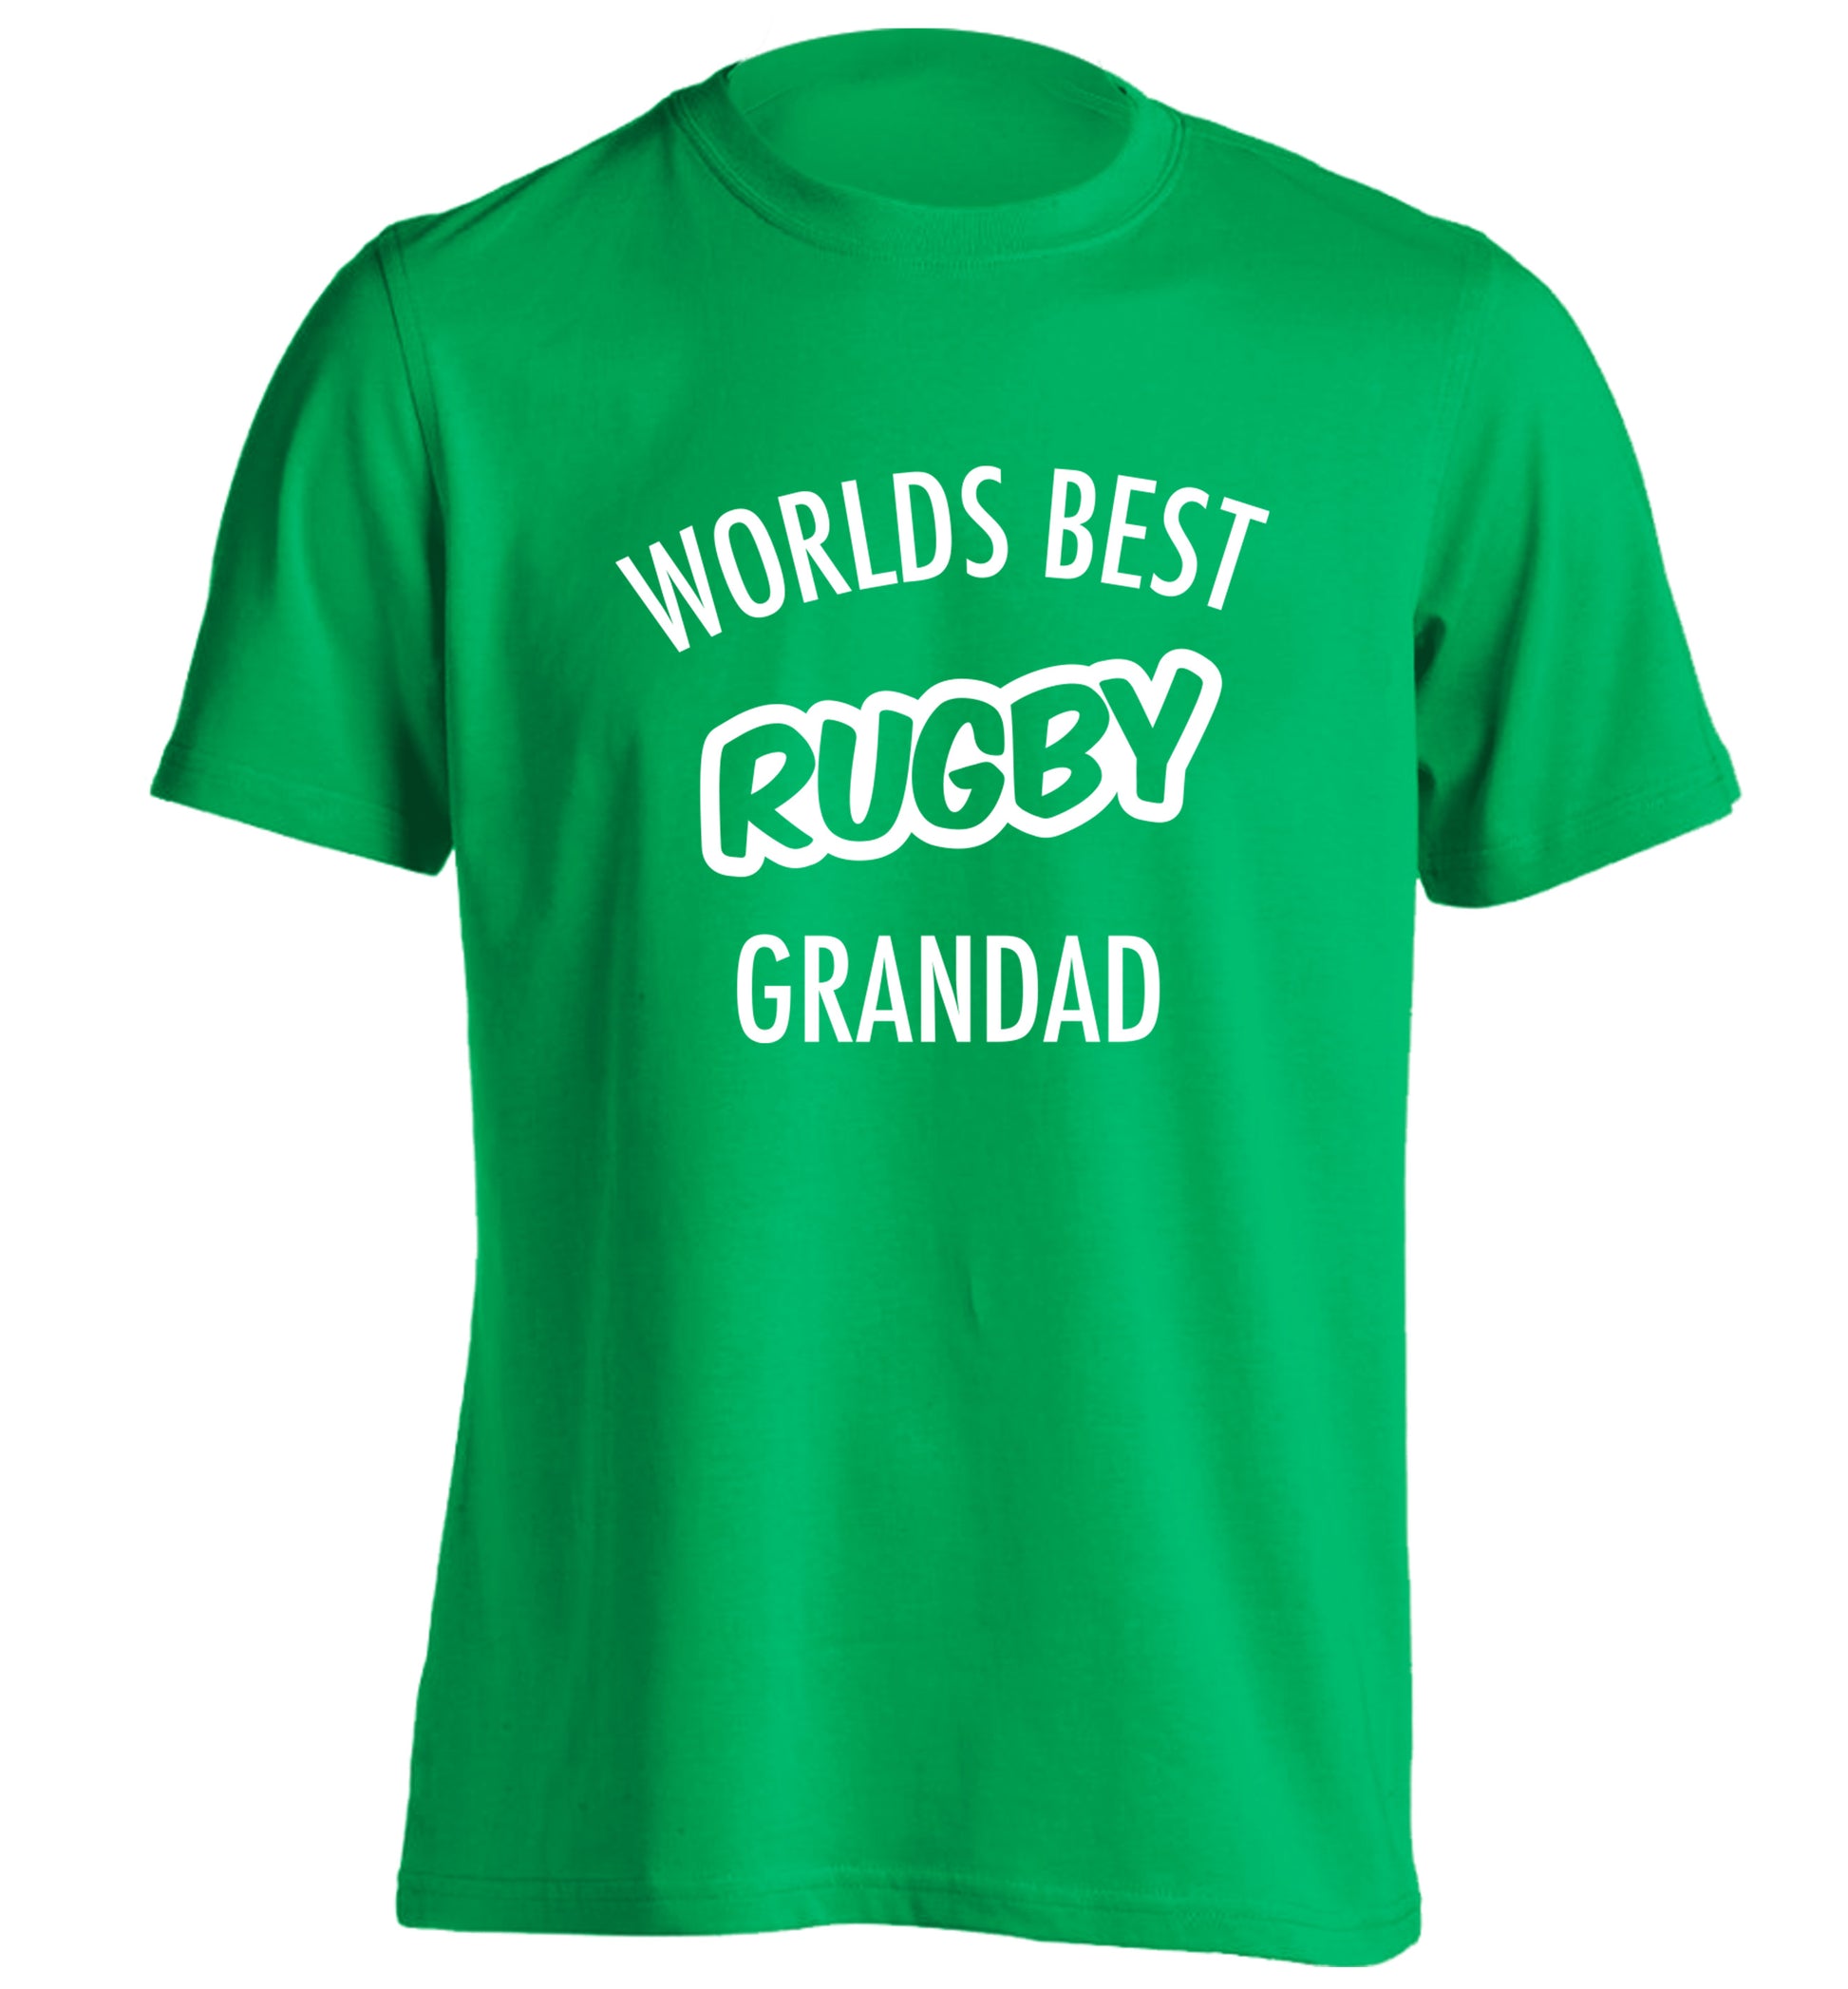 Worlds best rugby grandad adults unisex green Tshirt 2XL